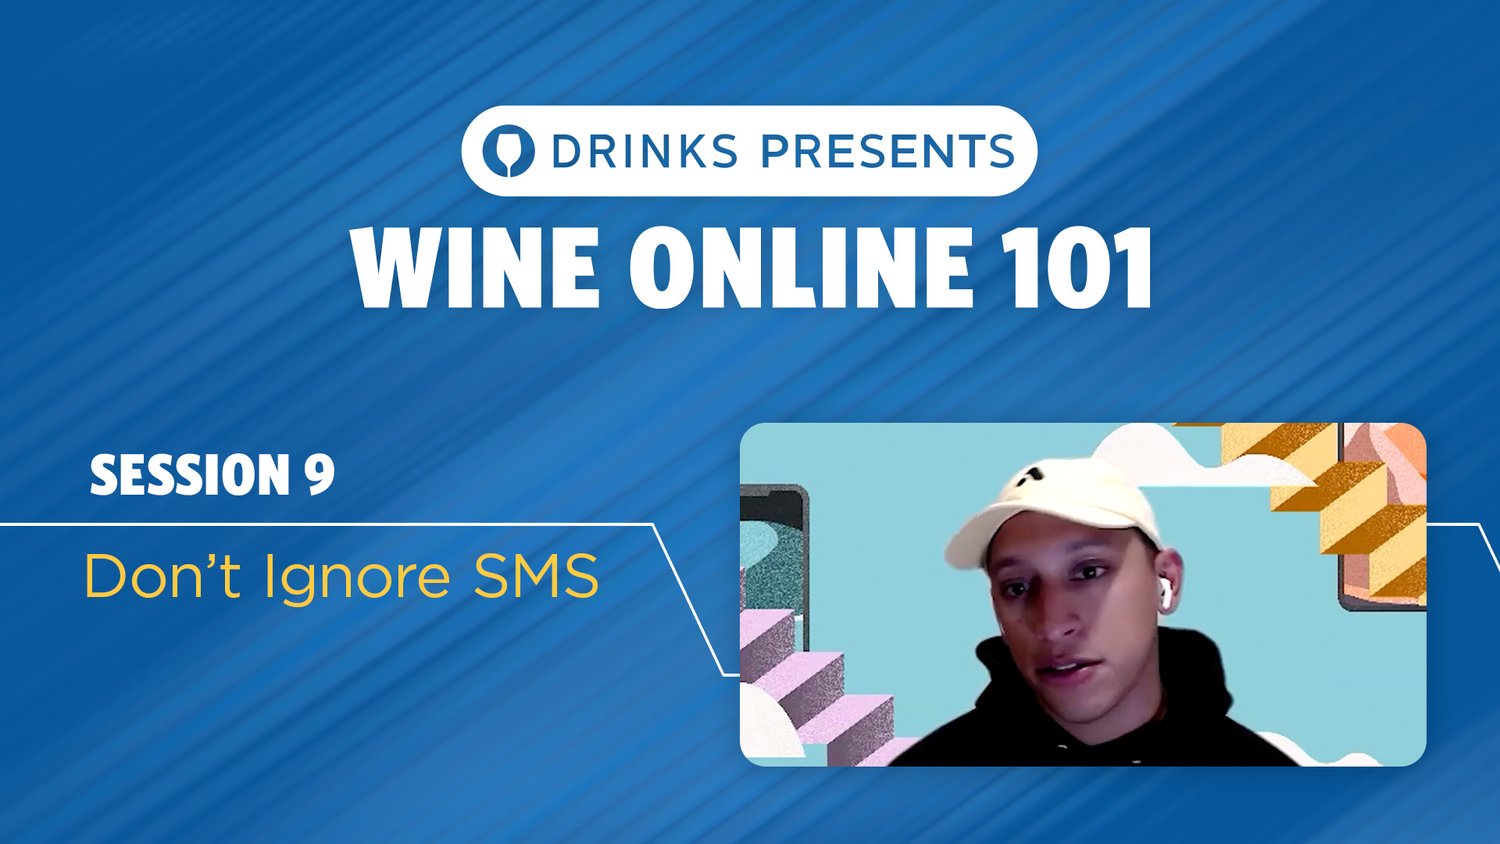 drinks-wine-online-101-title-slide-session-09